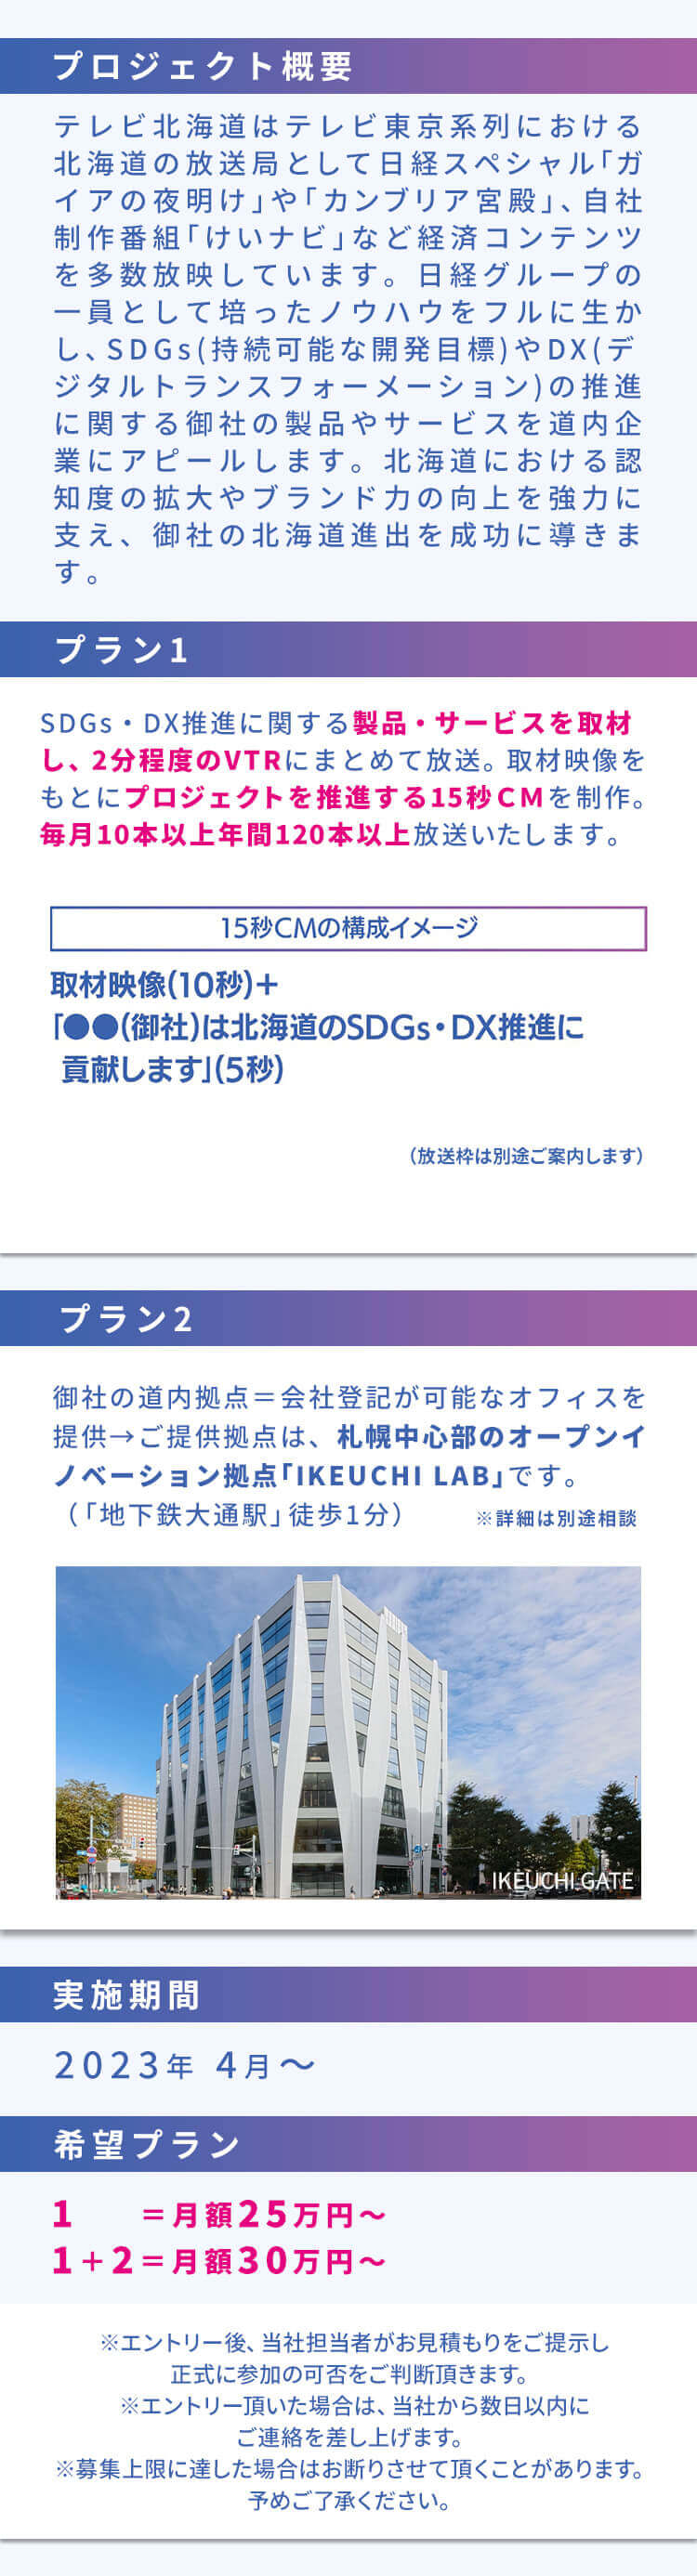 プロジェクト概要 テレビ北海道はテレビ東京系列における北海道の放送局として日経スペシャル｢ガイアの夜明け｣や｢カンブリア宮殿｣、自社制作番組｢けいナビ｣など経済コンテンツを多数放映しています。日経グループの一員として培ったノウハウをフルに生かし、SDGs(持続可能な開発目標)やDX(デジタルトランスフォーメーション)の推進に関する御社の製品やサービスを道内企業にアピールします。北海道における認知度の拡大やブランド力の向上を強力に支え、御社の北海道進出を成功に導きます。プラン1 SDGs・DX推進に関する製品・サービスを取材し、2分程度のVTRにまとめて放送。取材映像をもとにプロジェクトを推進する15秒CMを制作。毎月10本以上年間120本以上放送いたします。「15秒CMの構成イメージ」取材映像 (10秒) +「●●(御社)は北海道のSDGs・DX推進に貢献します」(5秒)(放送枠は別途ご案内します) プラン2 御社の道内拠点＝会社登記が可能なオフィスを提供→ご提供拠点は、札幌中心部のオープンイノベーション拠点「IKEUCHI LAB」です。(「地下鉄大通駅」 徒歩1分)※詳細は別途相談 実施期間 ２０２３年４月～希望プラン １ ＝月額２５万円～ １＋２＝月額３０万円～ ※エントリー後、 当社担当者がお見積もりをご提示し正式に参加の可否をご判断頂きます。※エントリー頂いた場合は、当社から数日以内にご連絡を差し上げます。※募集上限に達した場合はお断りさせて頂くことがあります。 予めご了承ください。